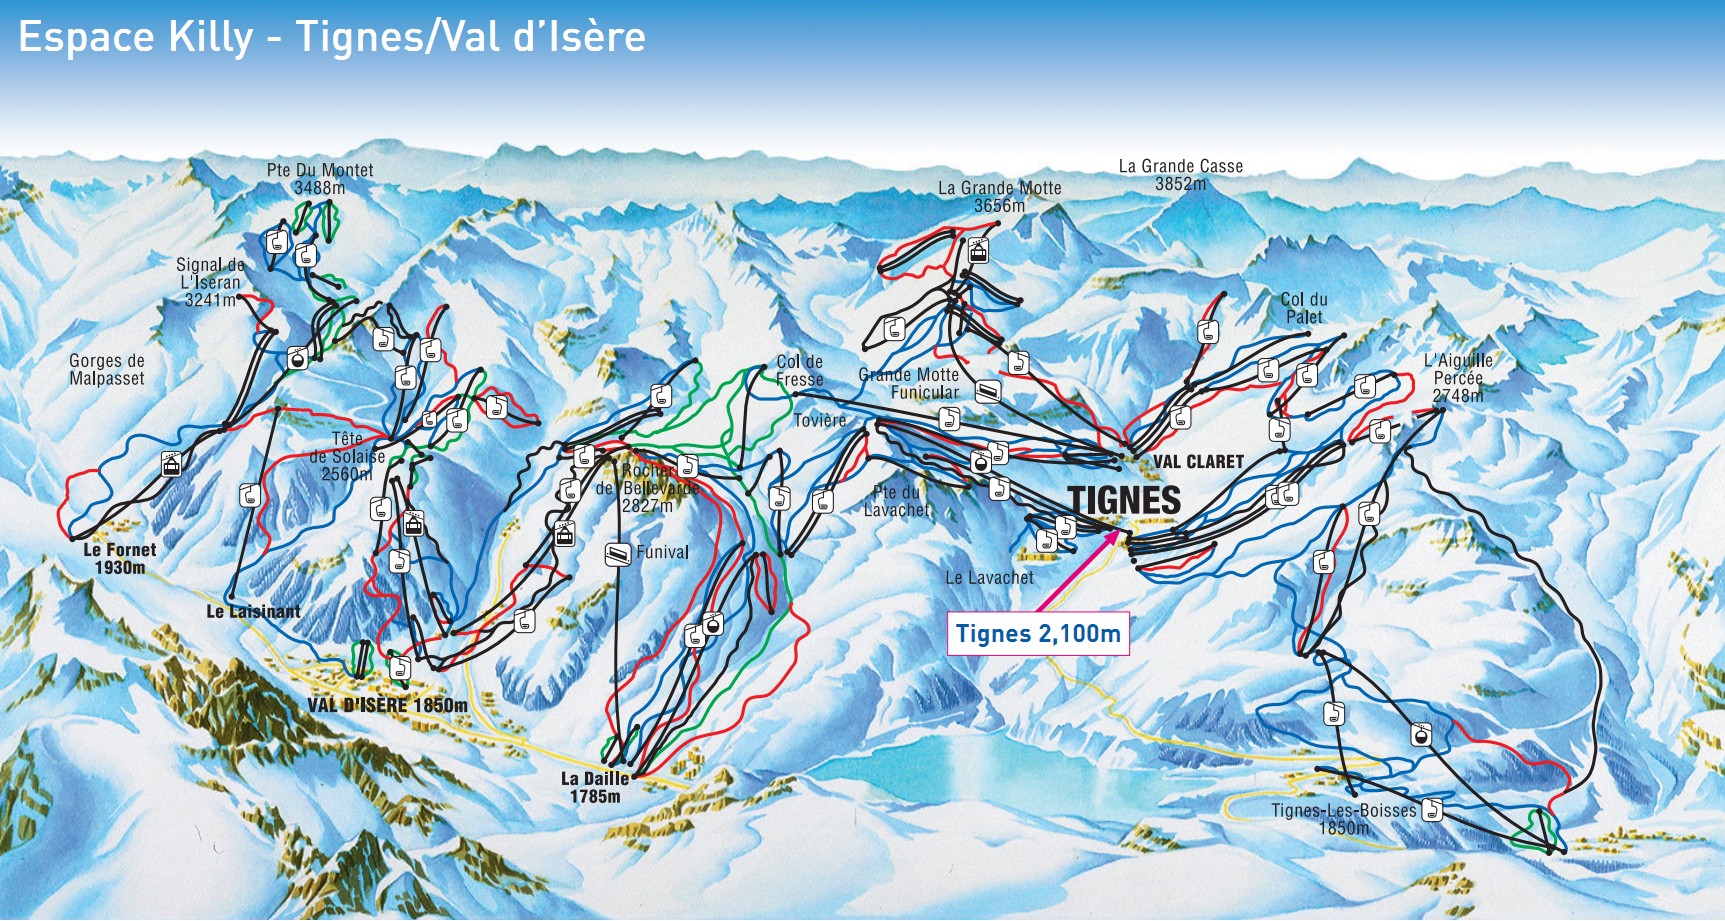 https://skitours.com.ua/sites/default/files/images/resorts/France/La-Grande-Motte/La-Grande-Motte-Map.jpg